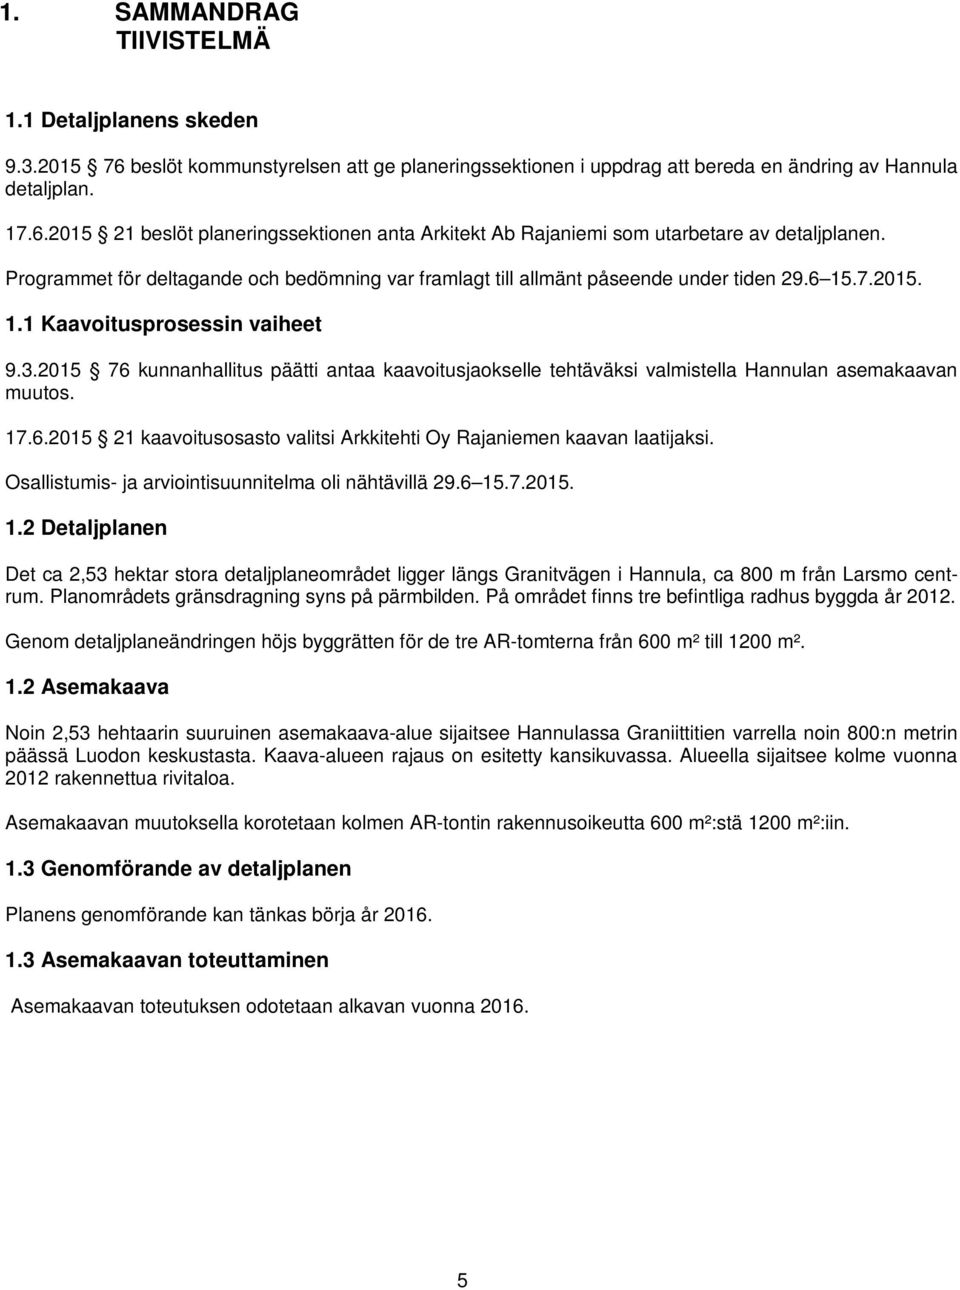 2015 76 kunnanhallitus päätti antaa kaavoitusjaokselle tehtäväksi valmistella Hannulan asemakaavan muutos. 17.6.2015 21 kaavoitusosasto valitsi Arkkitehti Oy Rajaniemen kaavan laatijaksi.